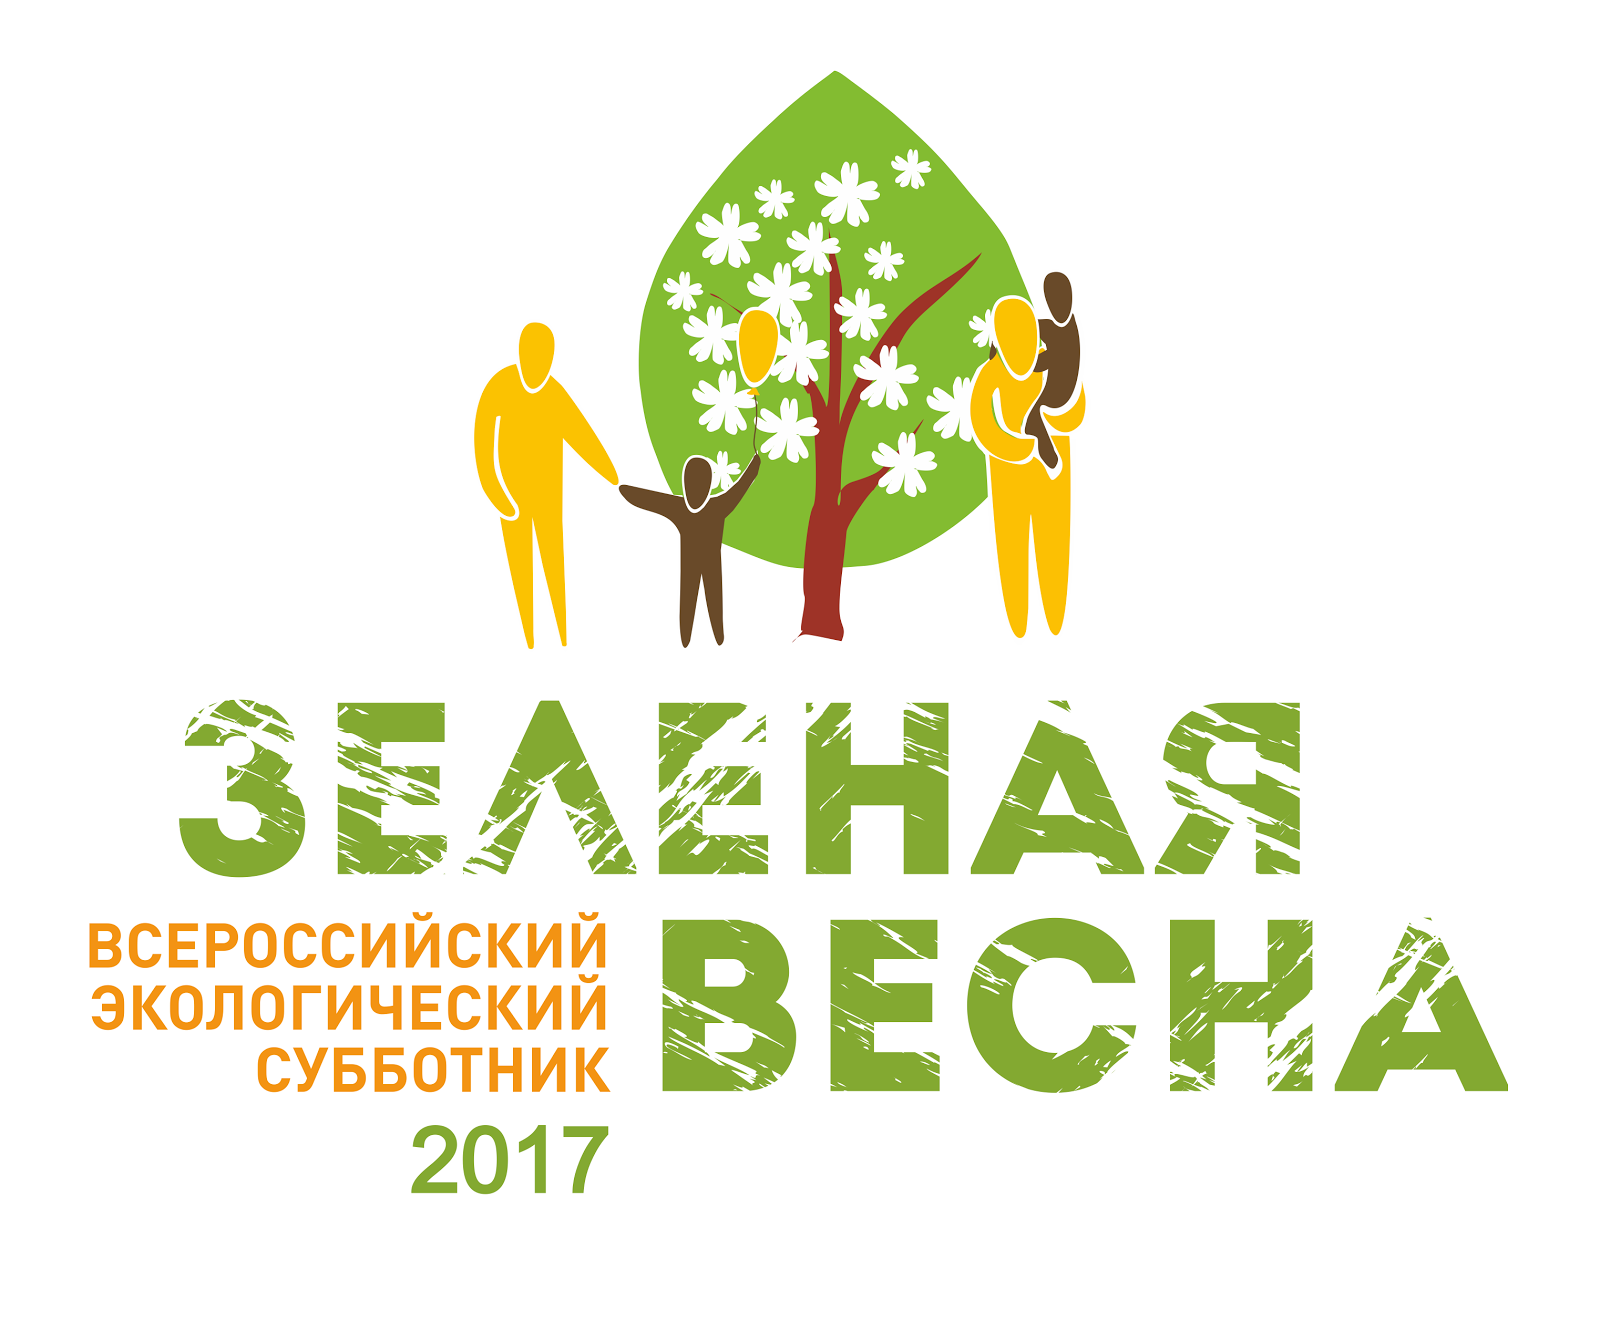 Всероссийский экологический субботник